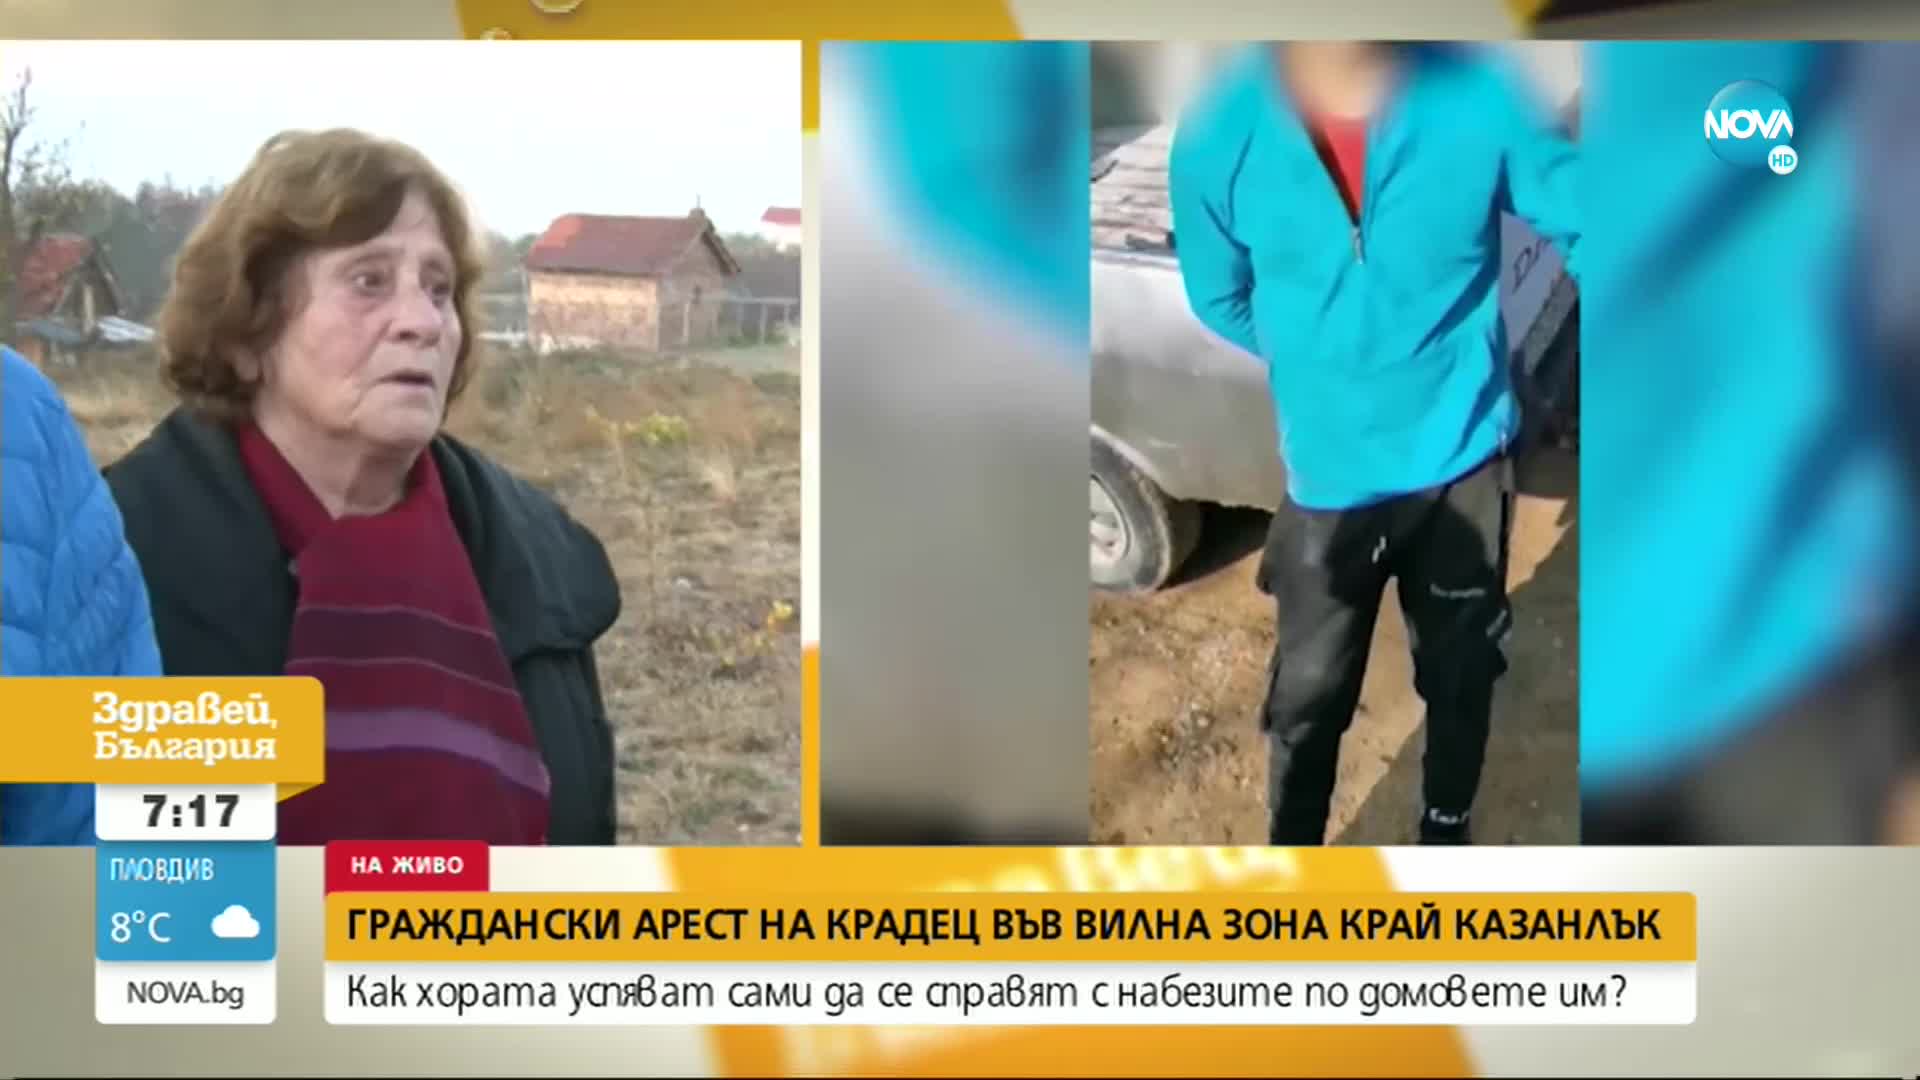 Граждански арест на крадец във вилна зона край Казанлък